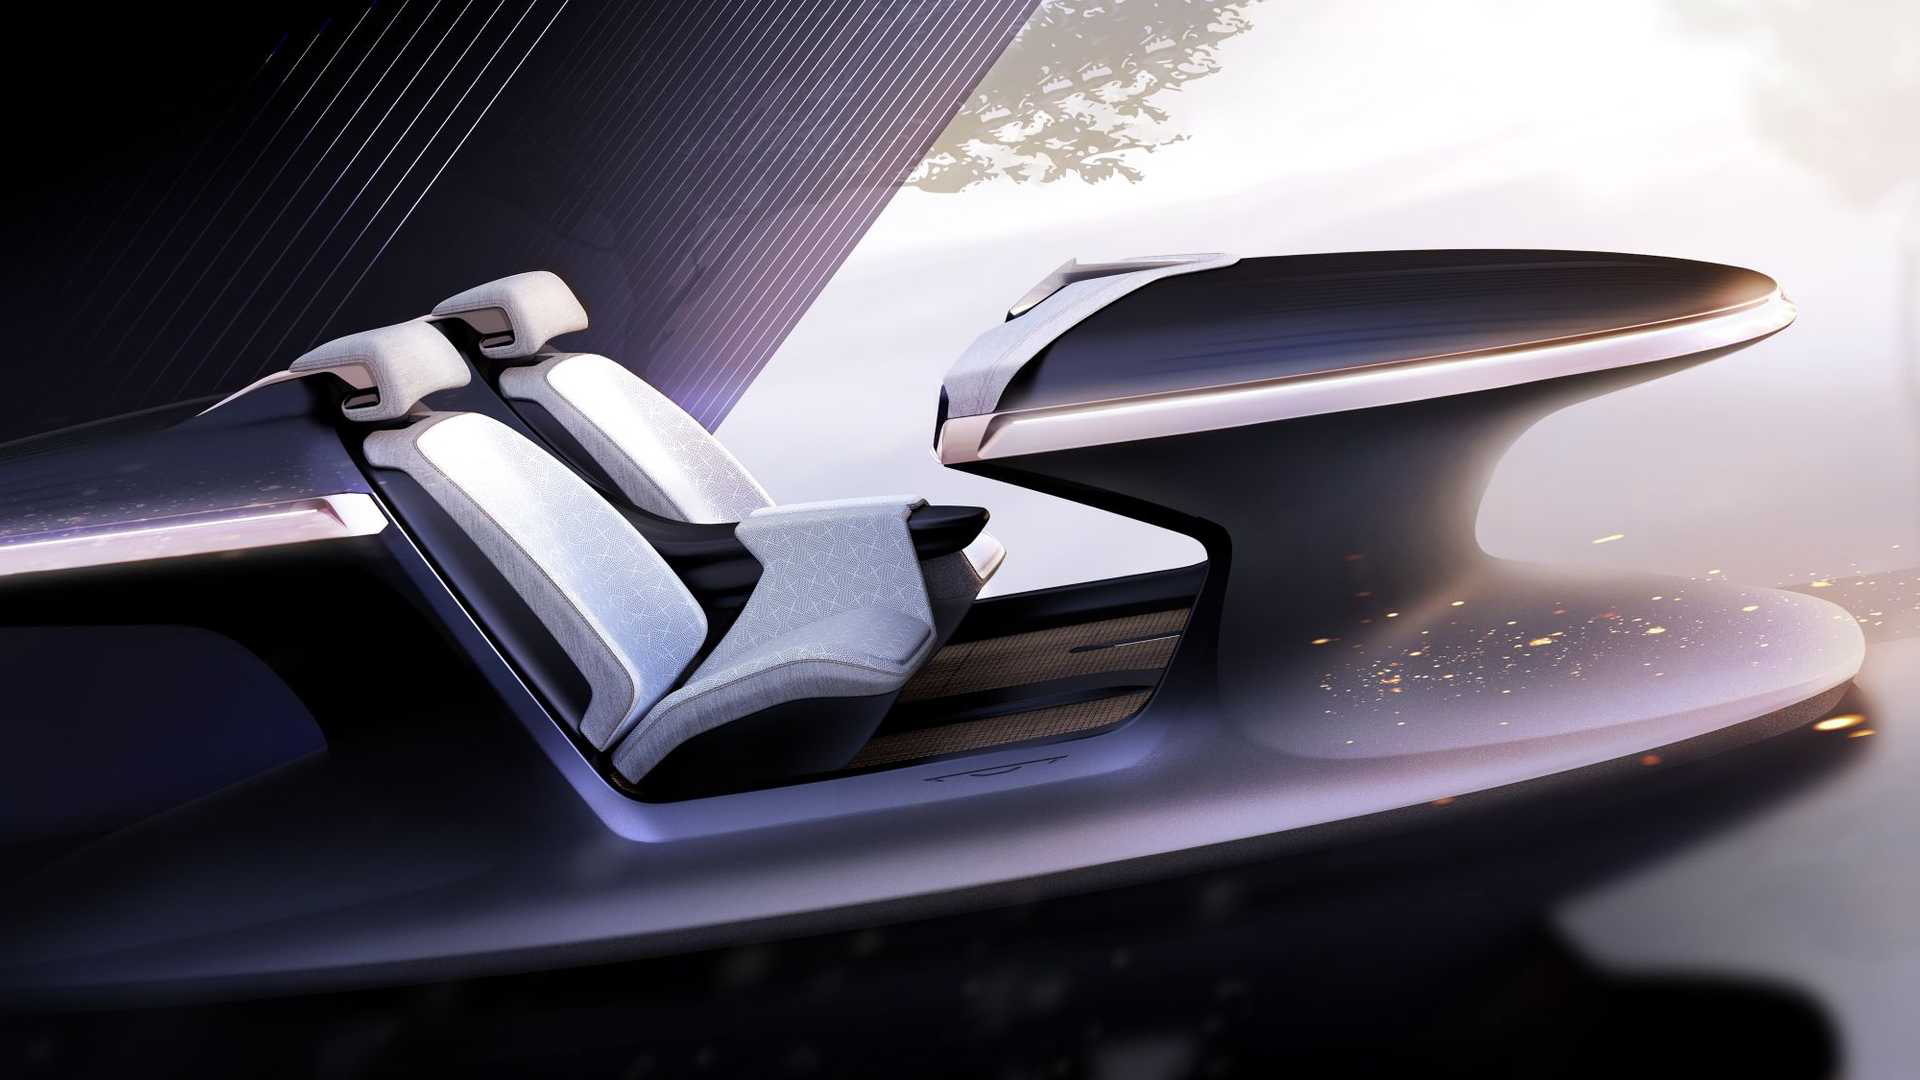 Además de tecnológico, el Chrysler Synthesis está construido completamente con materiales sustentables